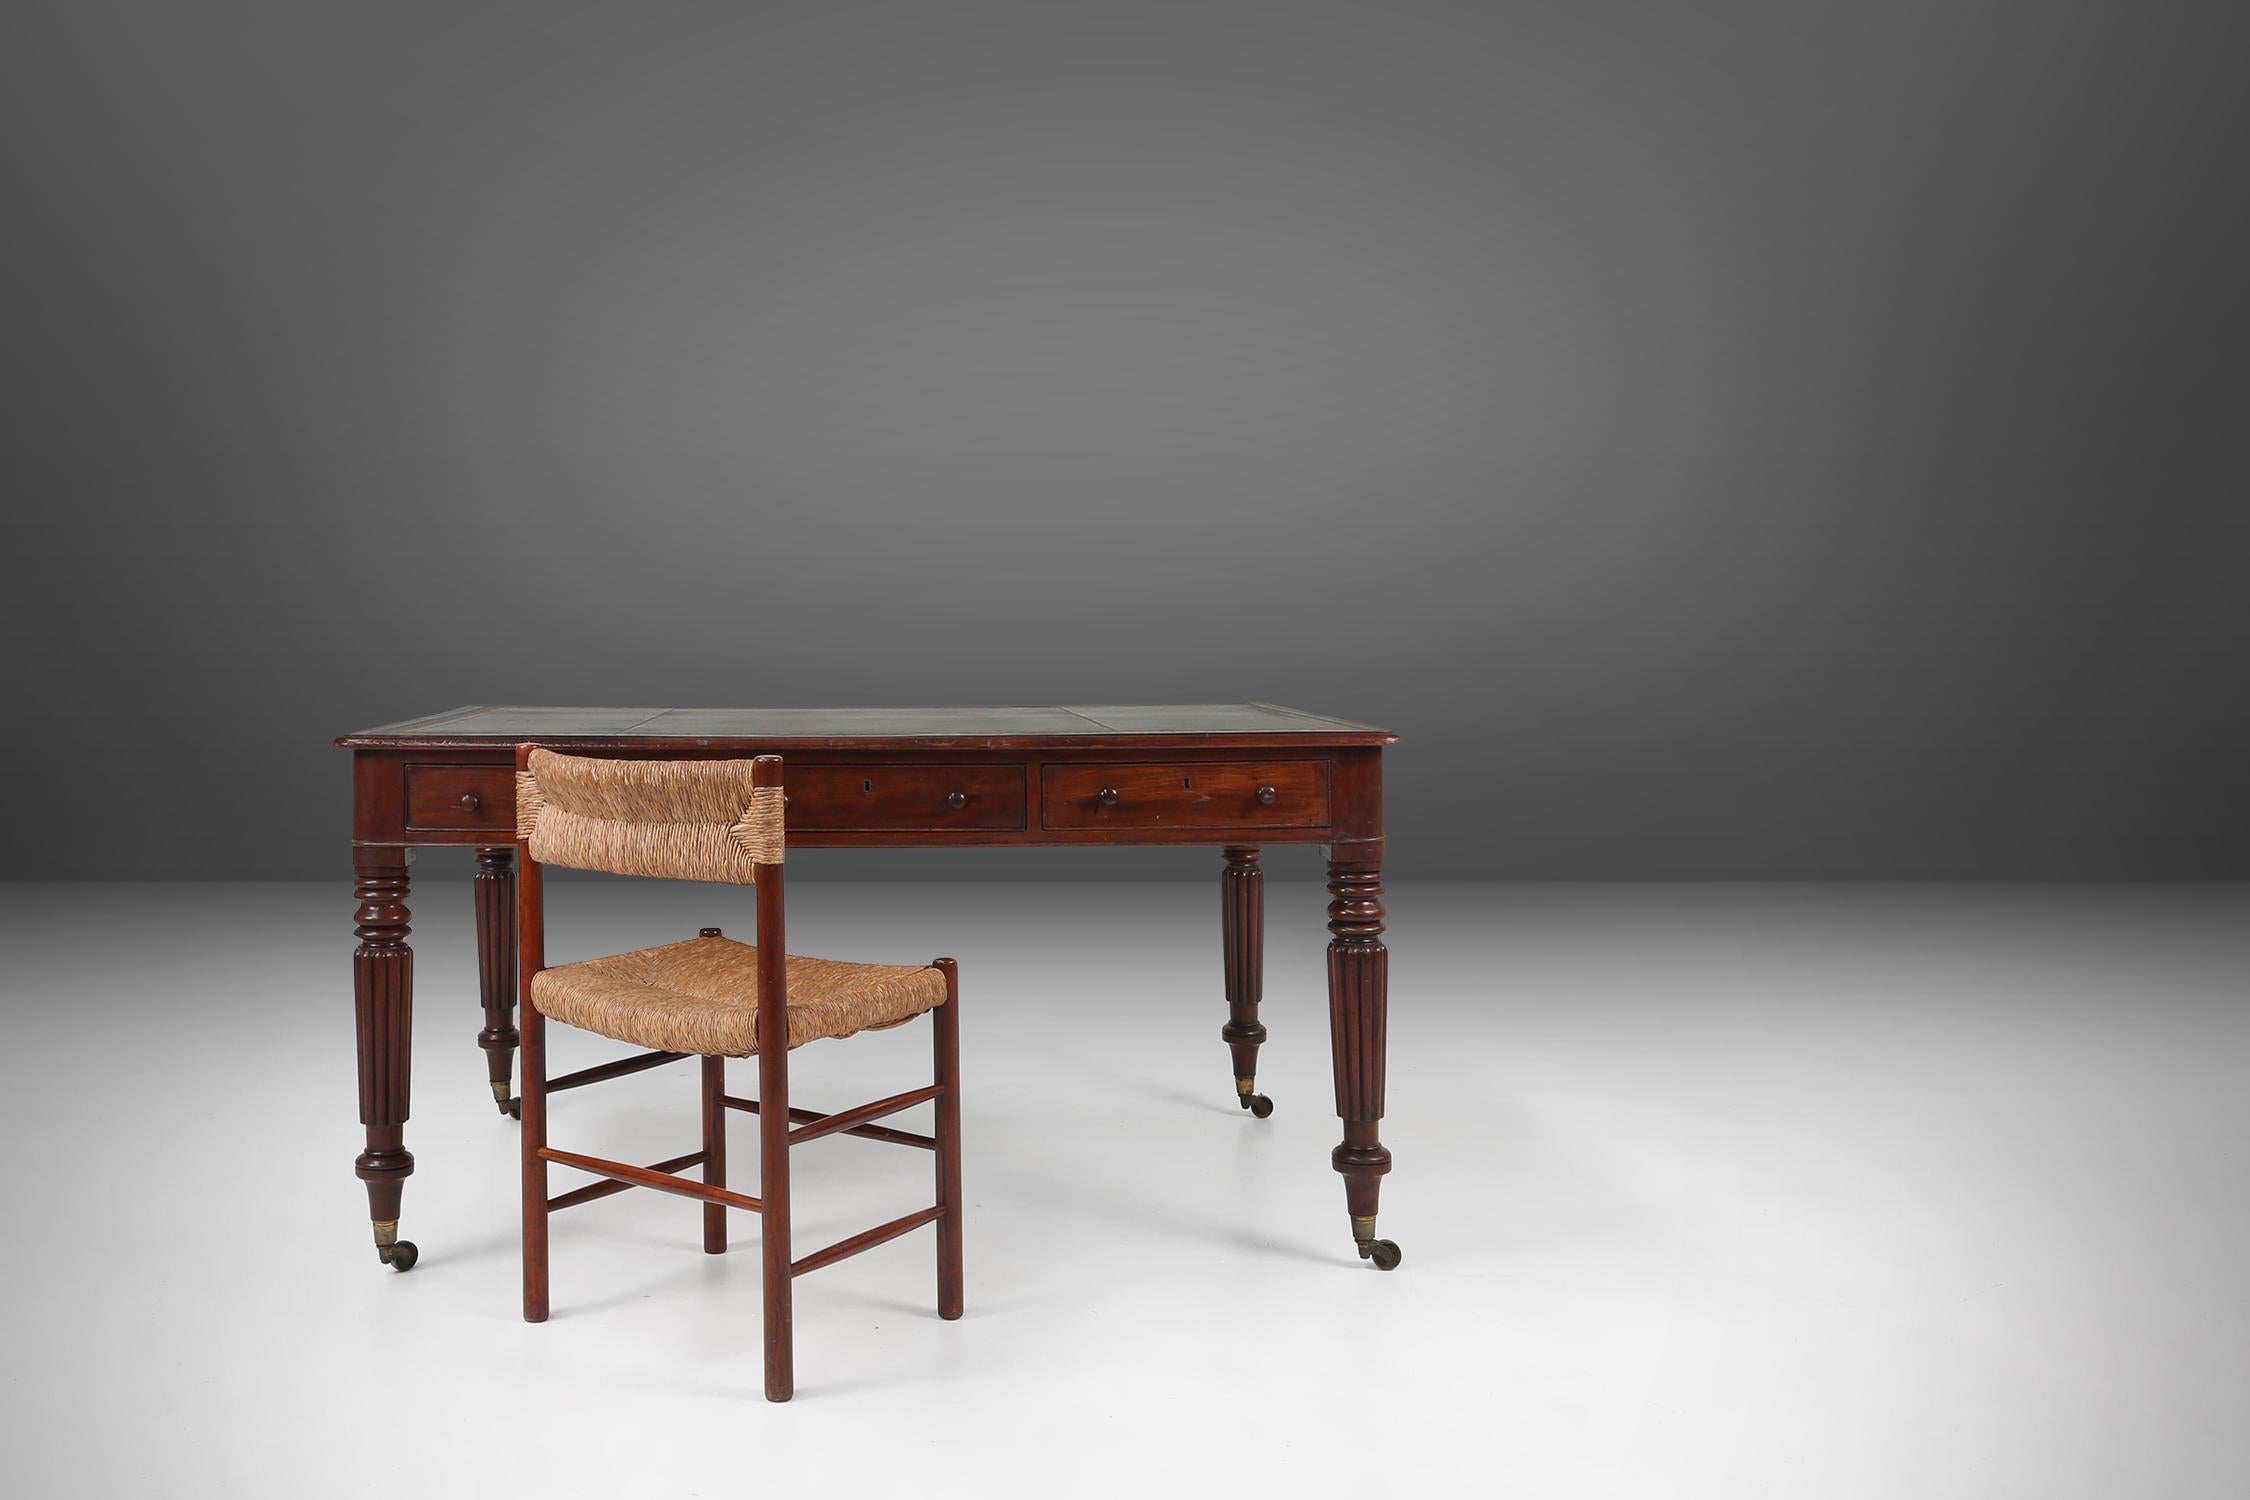 UK / 1870 / Englischer Schreibtisch / Holz und Leder / Antiquitäten 

Eine schöne Mitte des 19. Jahrhunderts Partner Schreibtisch / Tisch, in Großbritannien gemacht. Die profilierte Oberseite hat eine Schreibfläche aus grünem Leder mit